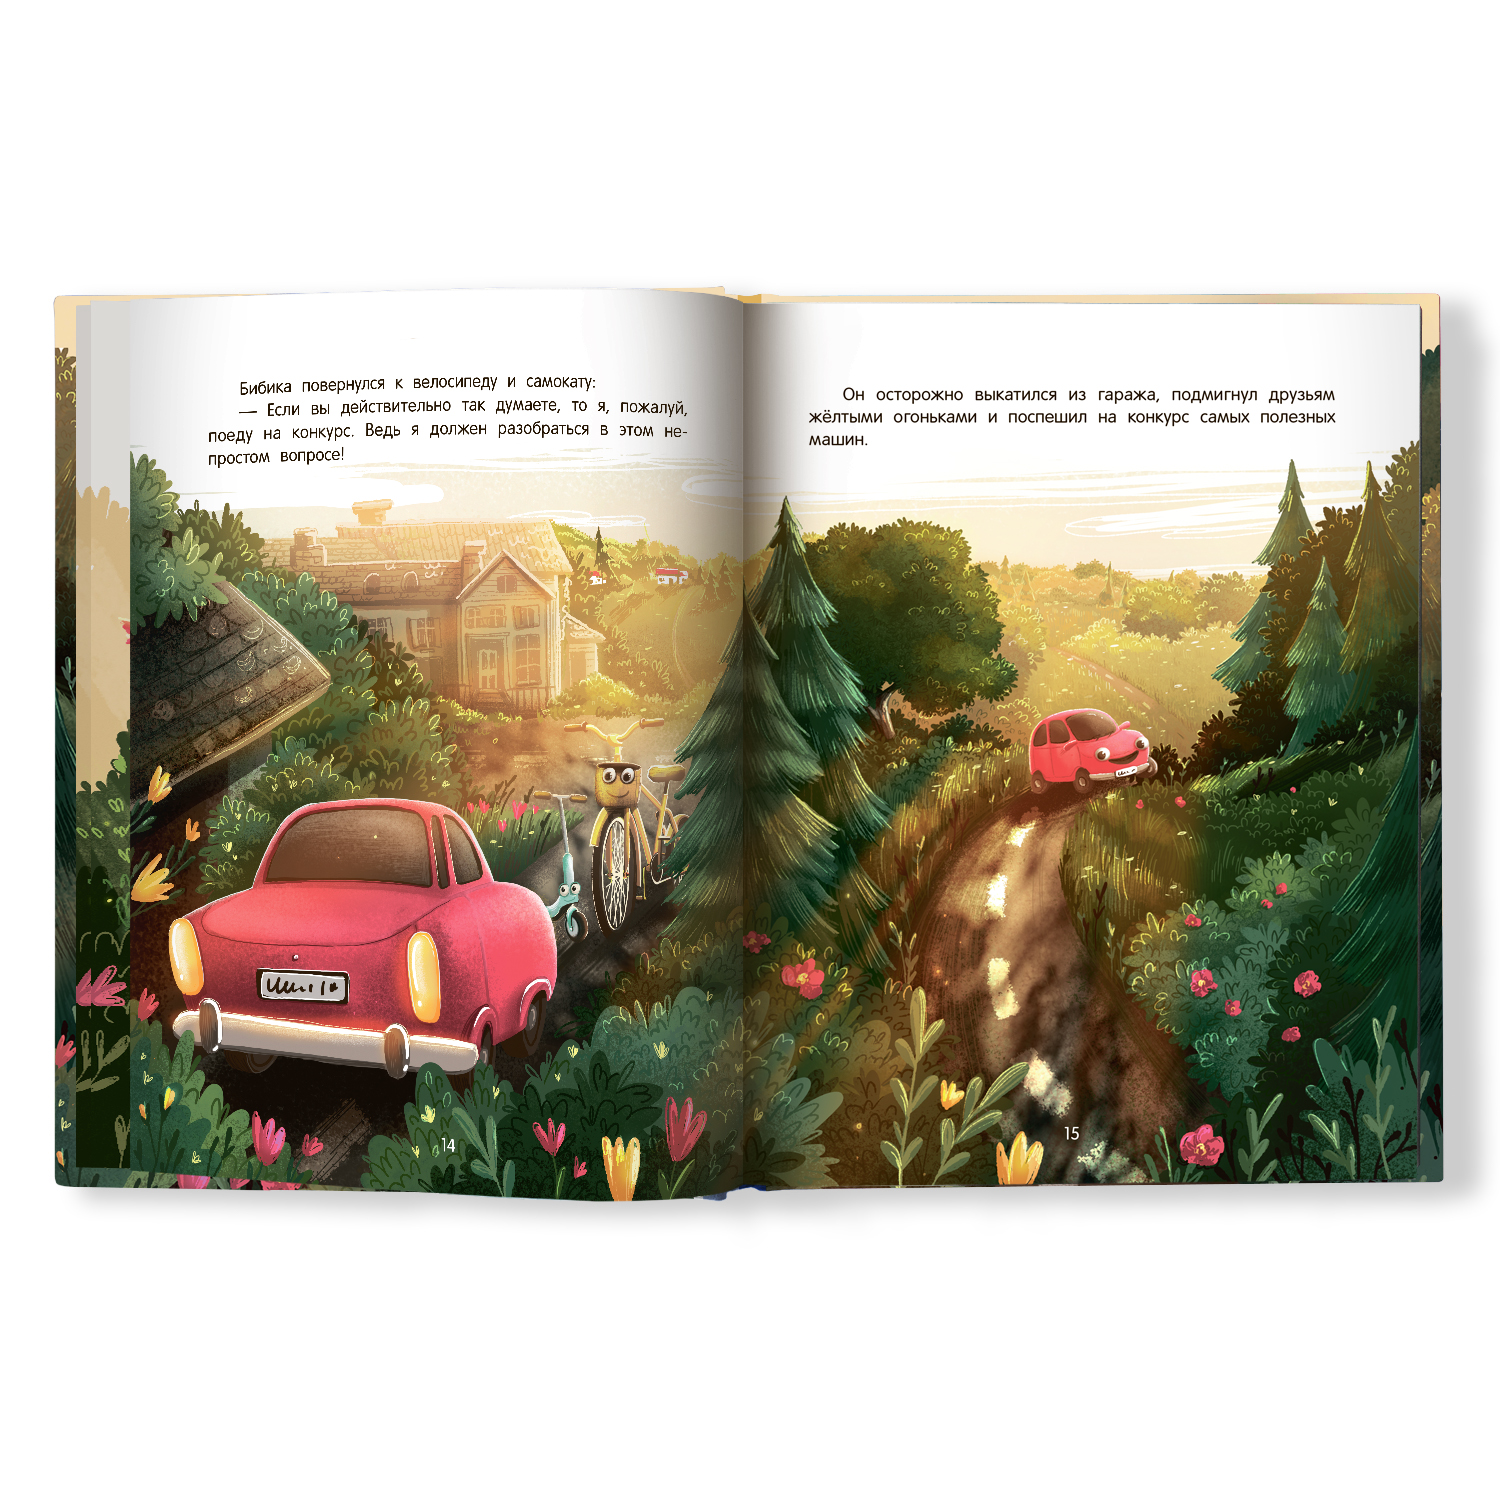 Книга Феникс Премьер Приключения автомобильчика Бибики - фото 13